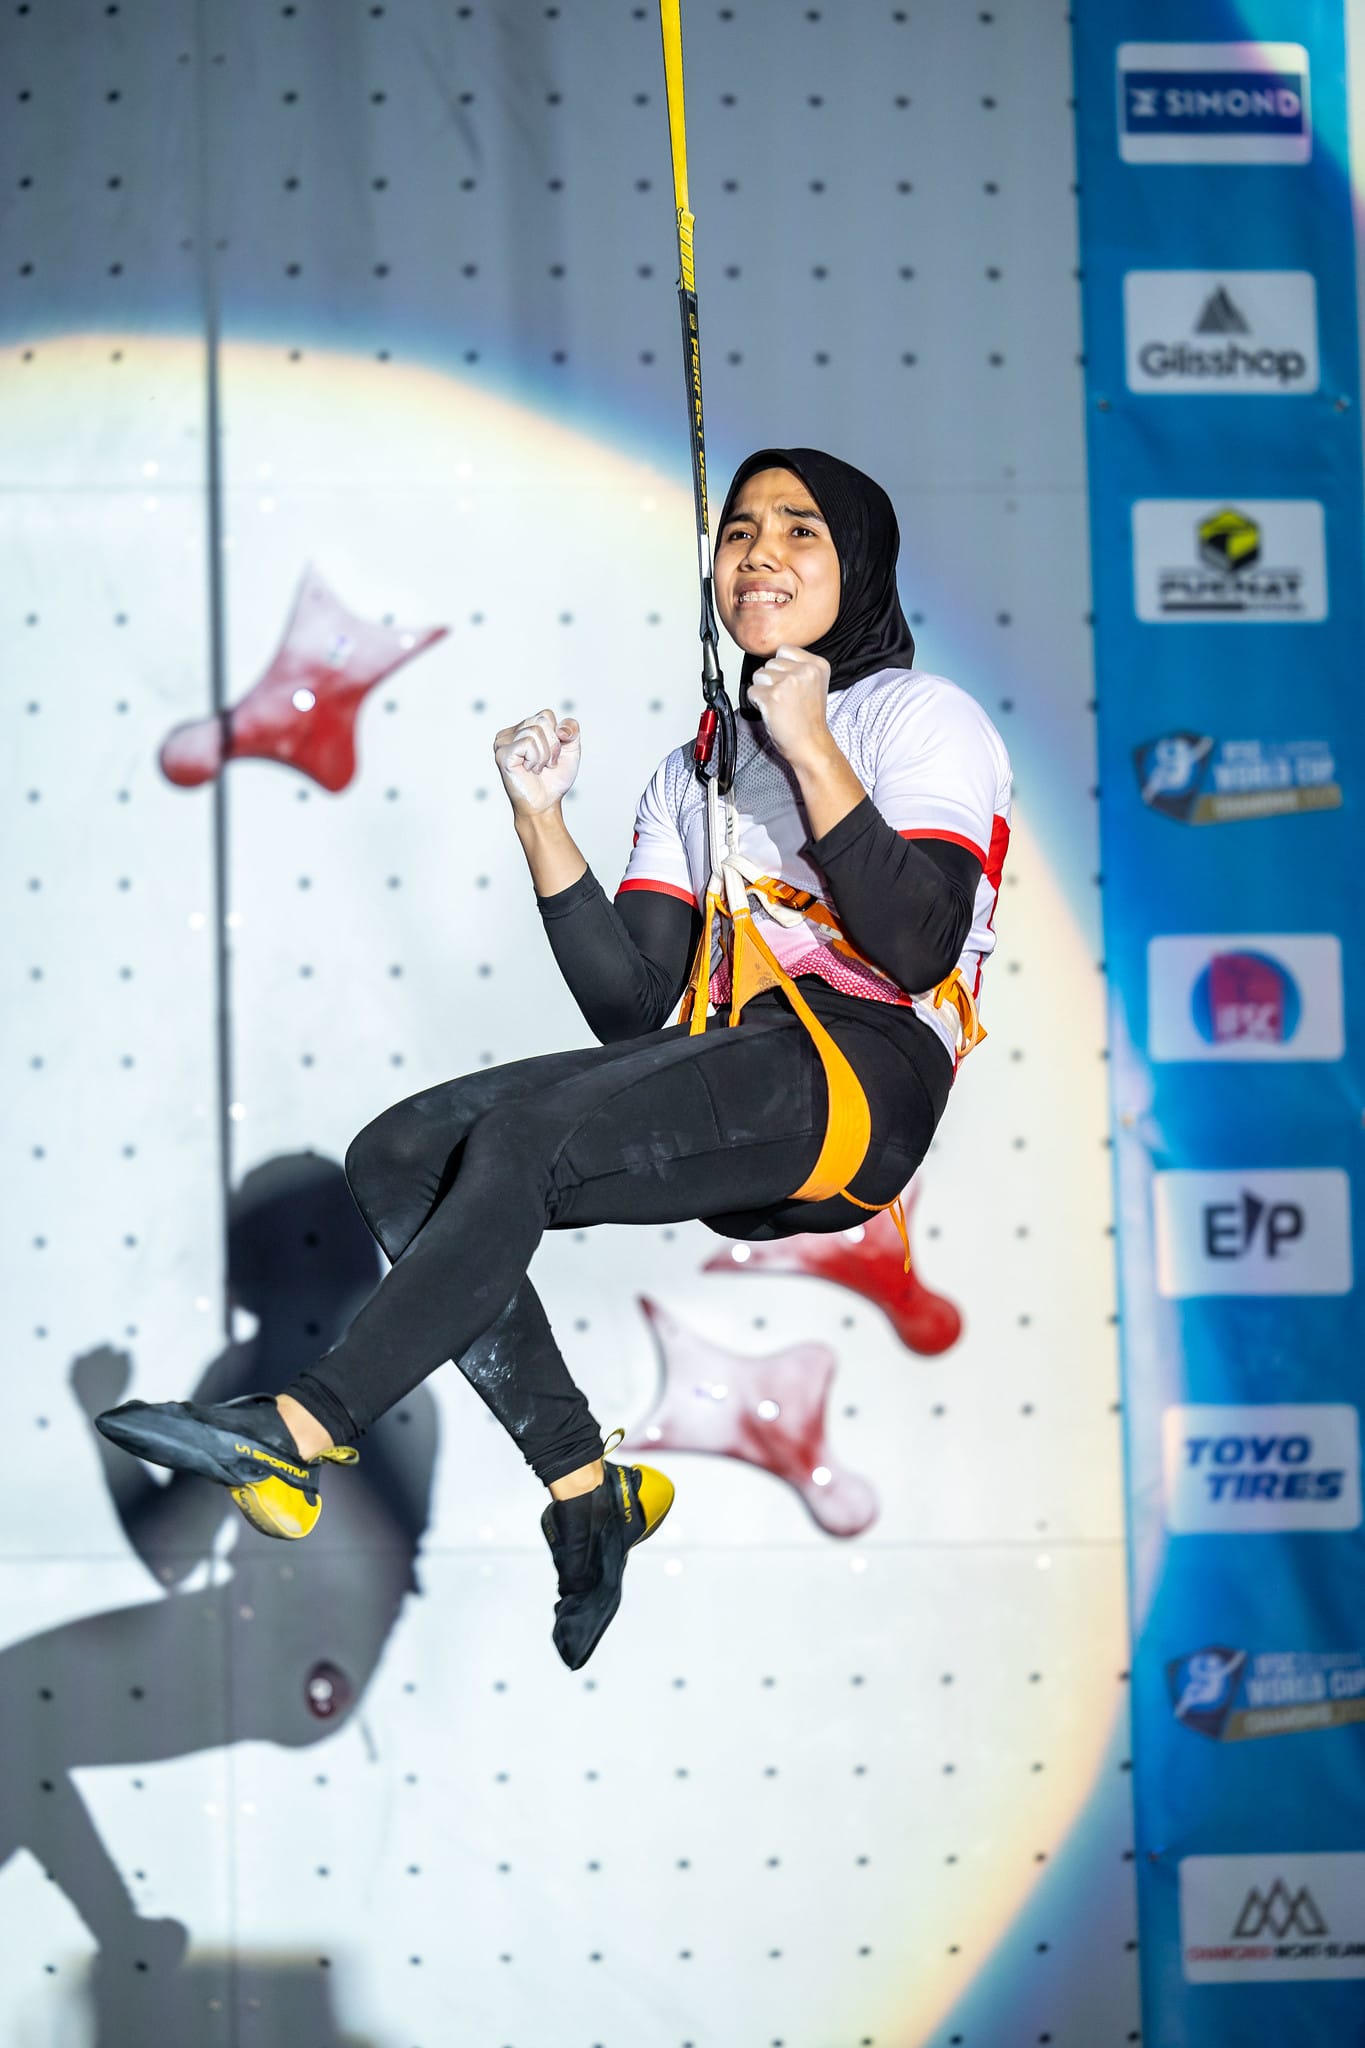 Rajiah Sallsabillah celebrates winning her first gold medal.